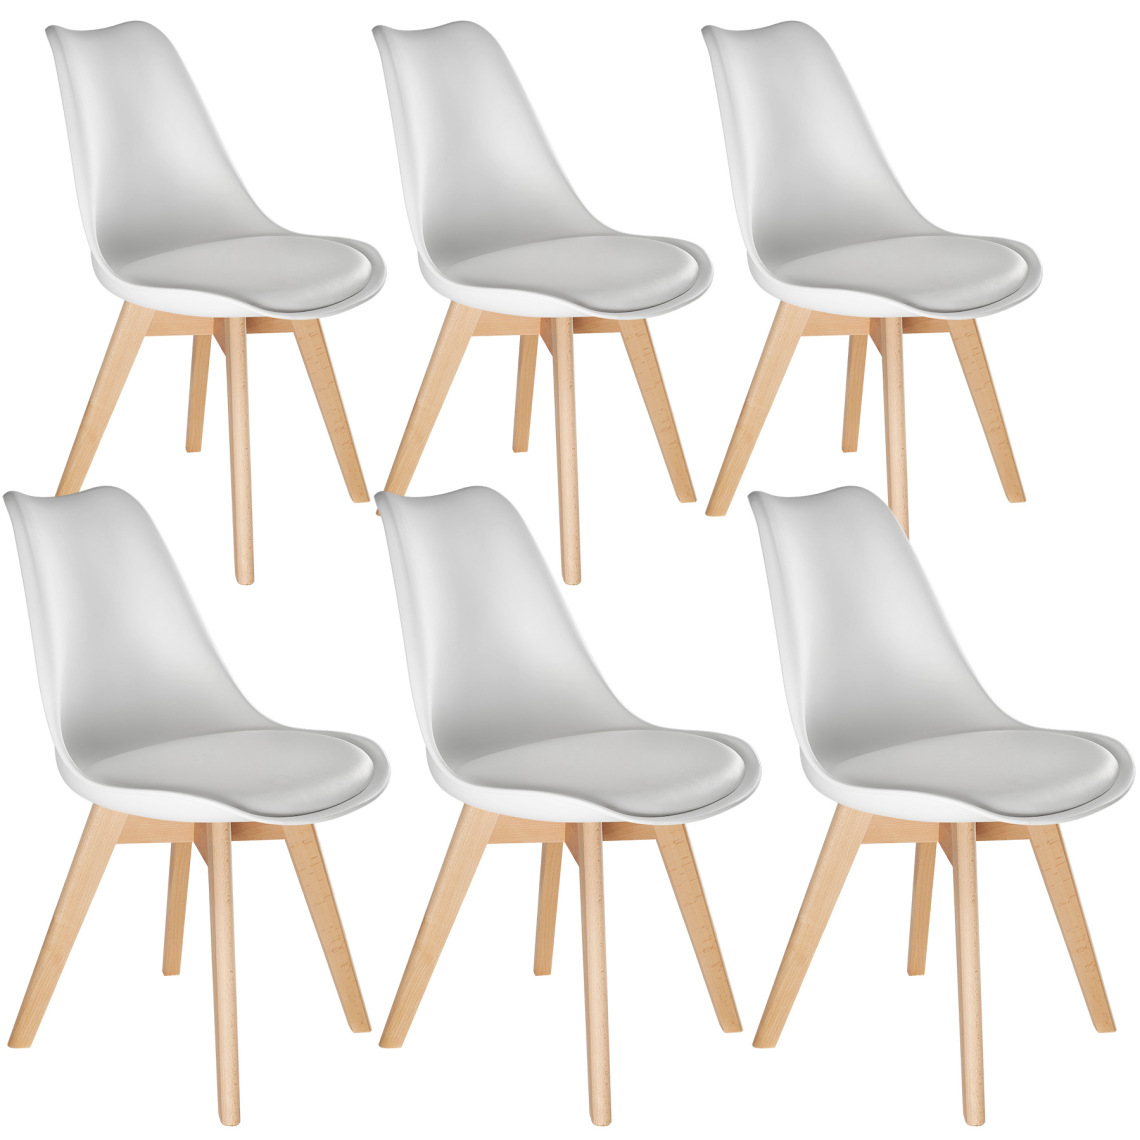 Tectake - 6 Chaises de Salle à Manger FRÉDÉRIQUE Style Scandinave Pieds en Bois Massif Design Moderne - blanc - Chaises